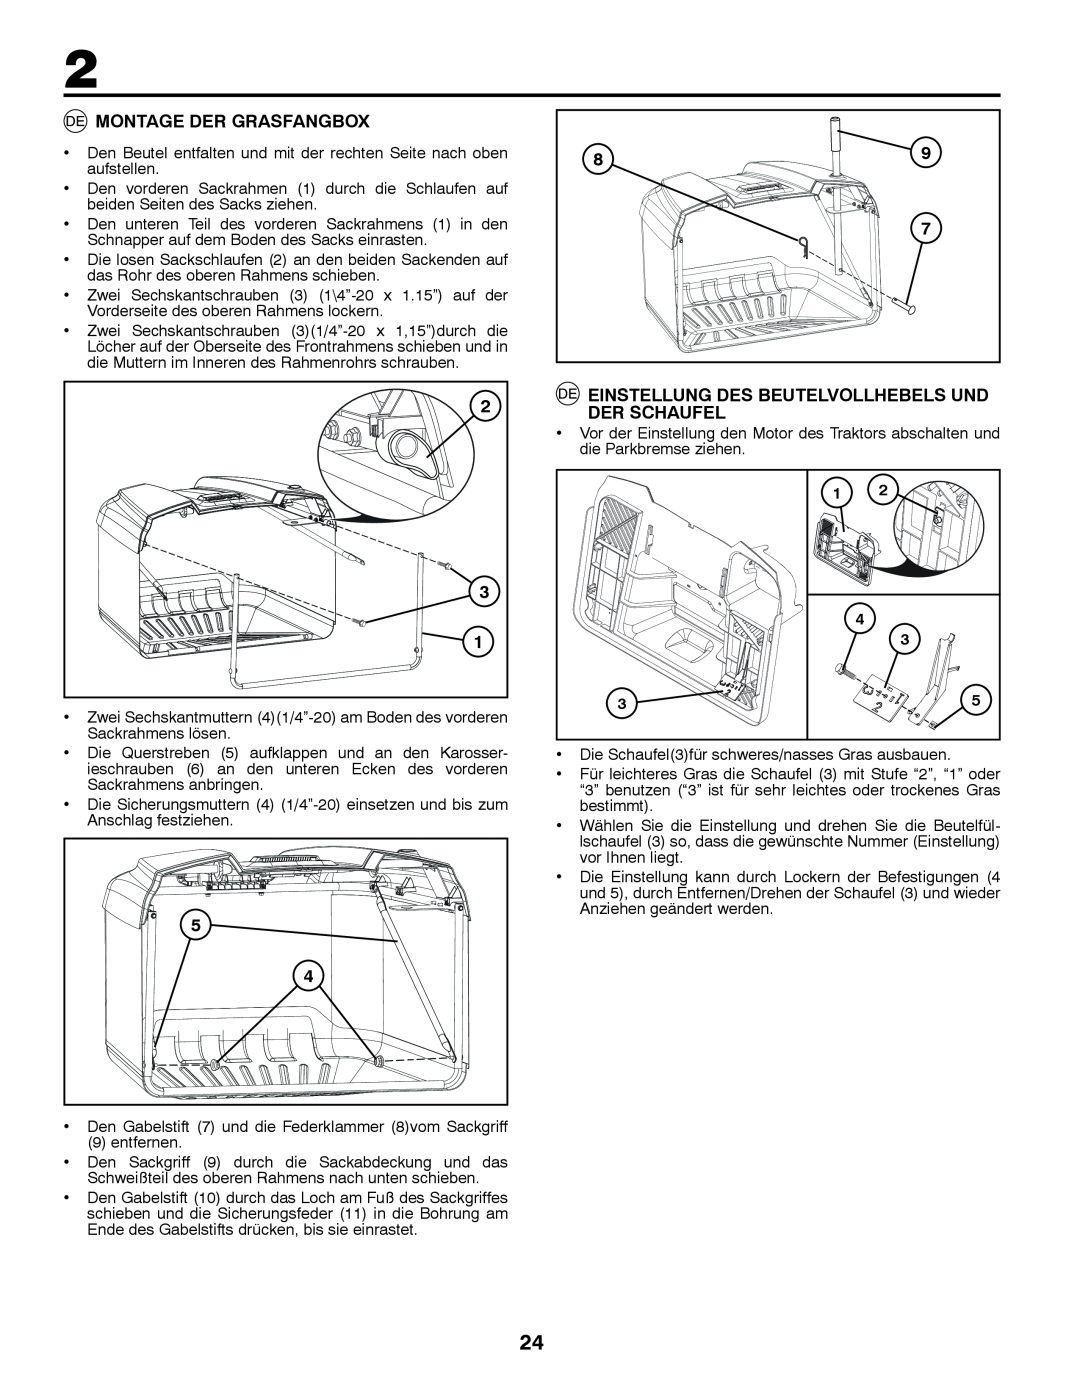 McCulloch 96041016500 instruction manual Montage Der Grasfangbox, Einstellung Des Beutelvollhebels Und Der Schaufel 